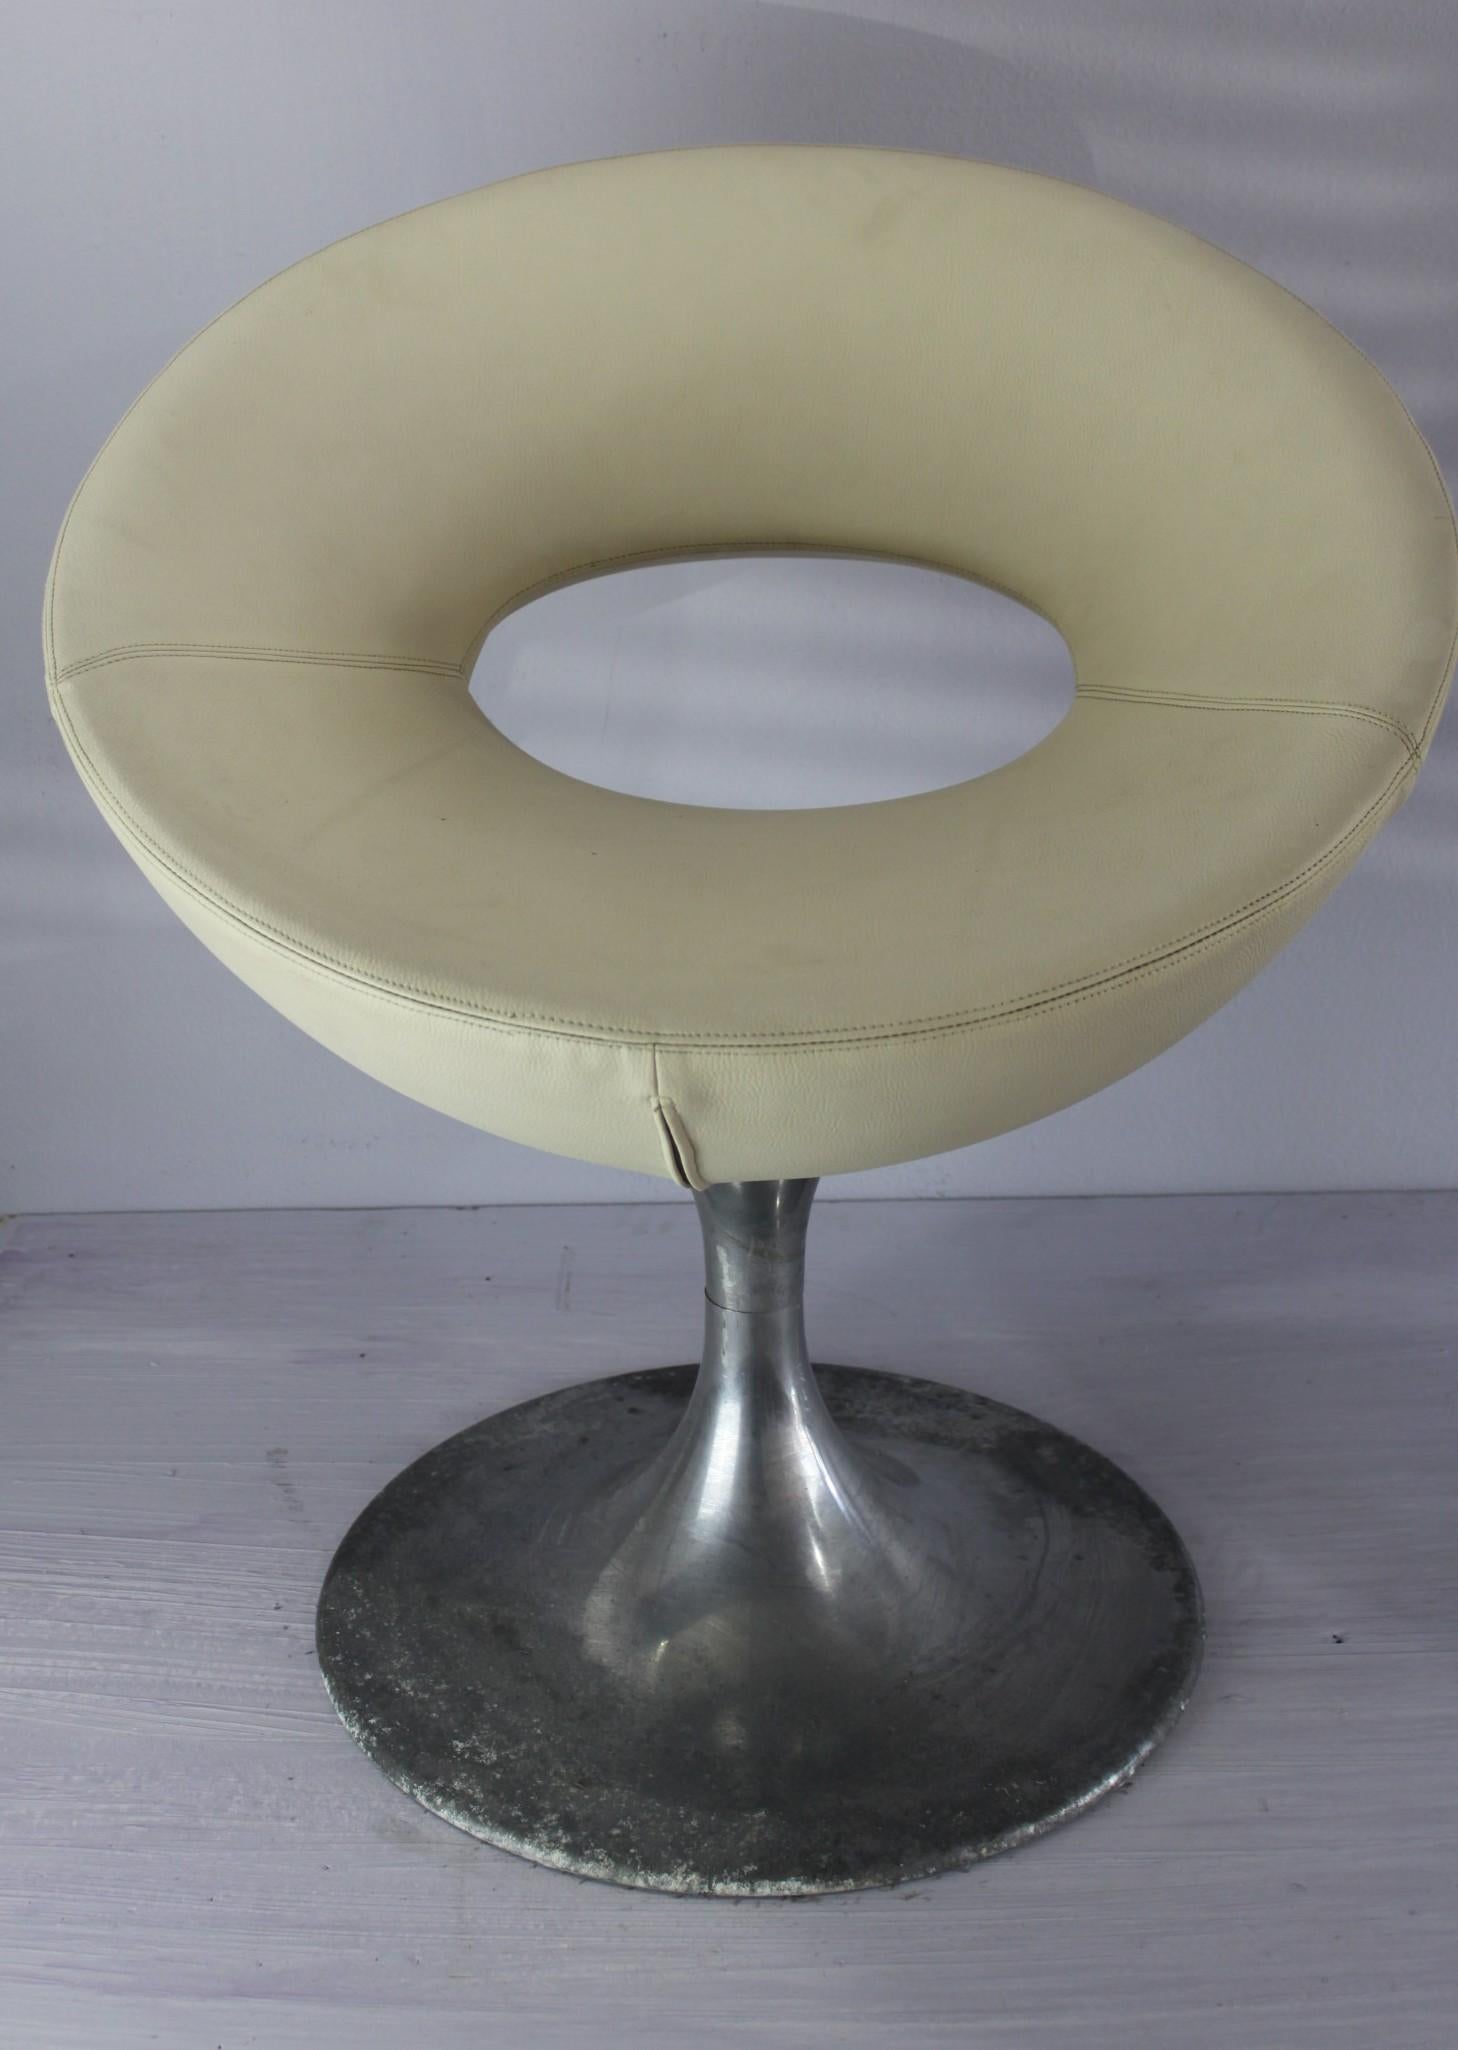 Entdecken Sie ein verstecktes Juwel in der Welt der Möbel - exquisite italienische Vintage-Stühle aus edlem Aluminiumguss, deren Space-Age-Design Sie in eine andere Zeit versetzt. Diese Stühle sind in tadellosem Zustand, mit einer Patina aus